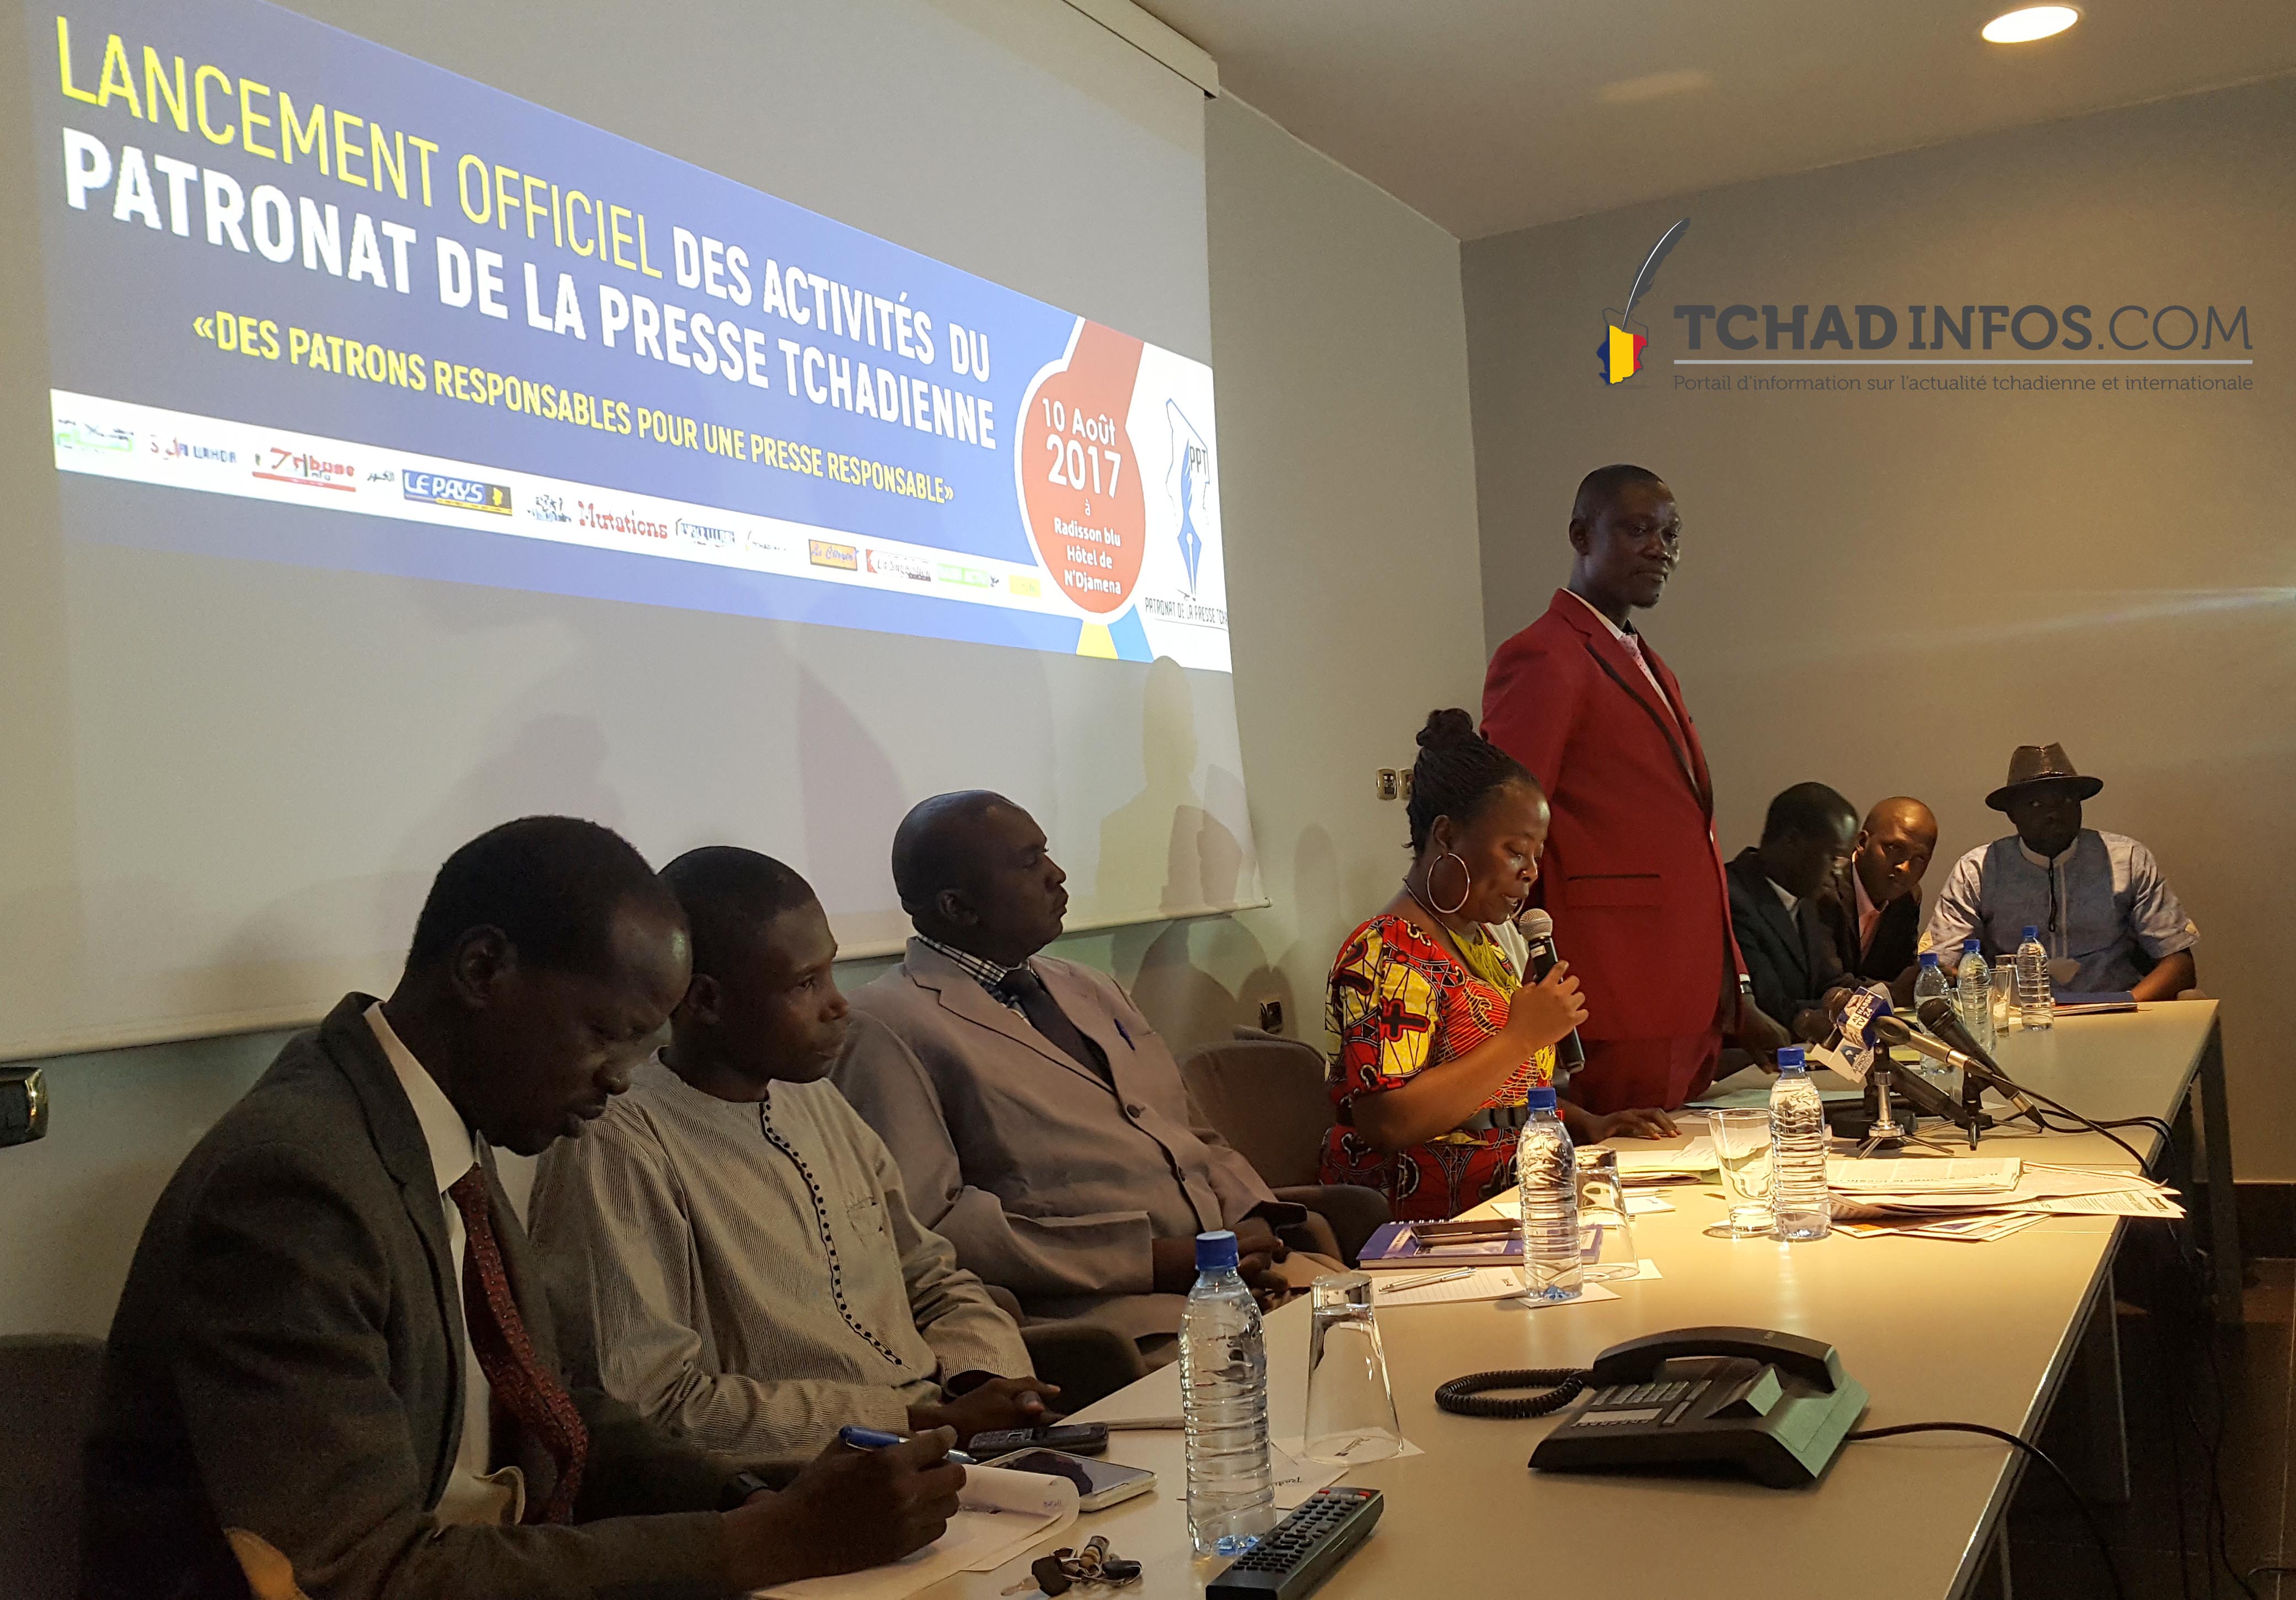 Médias : le Patronat de la presse tchadienne lance ses activités